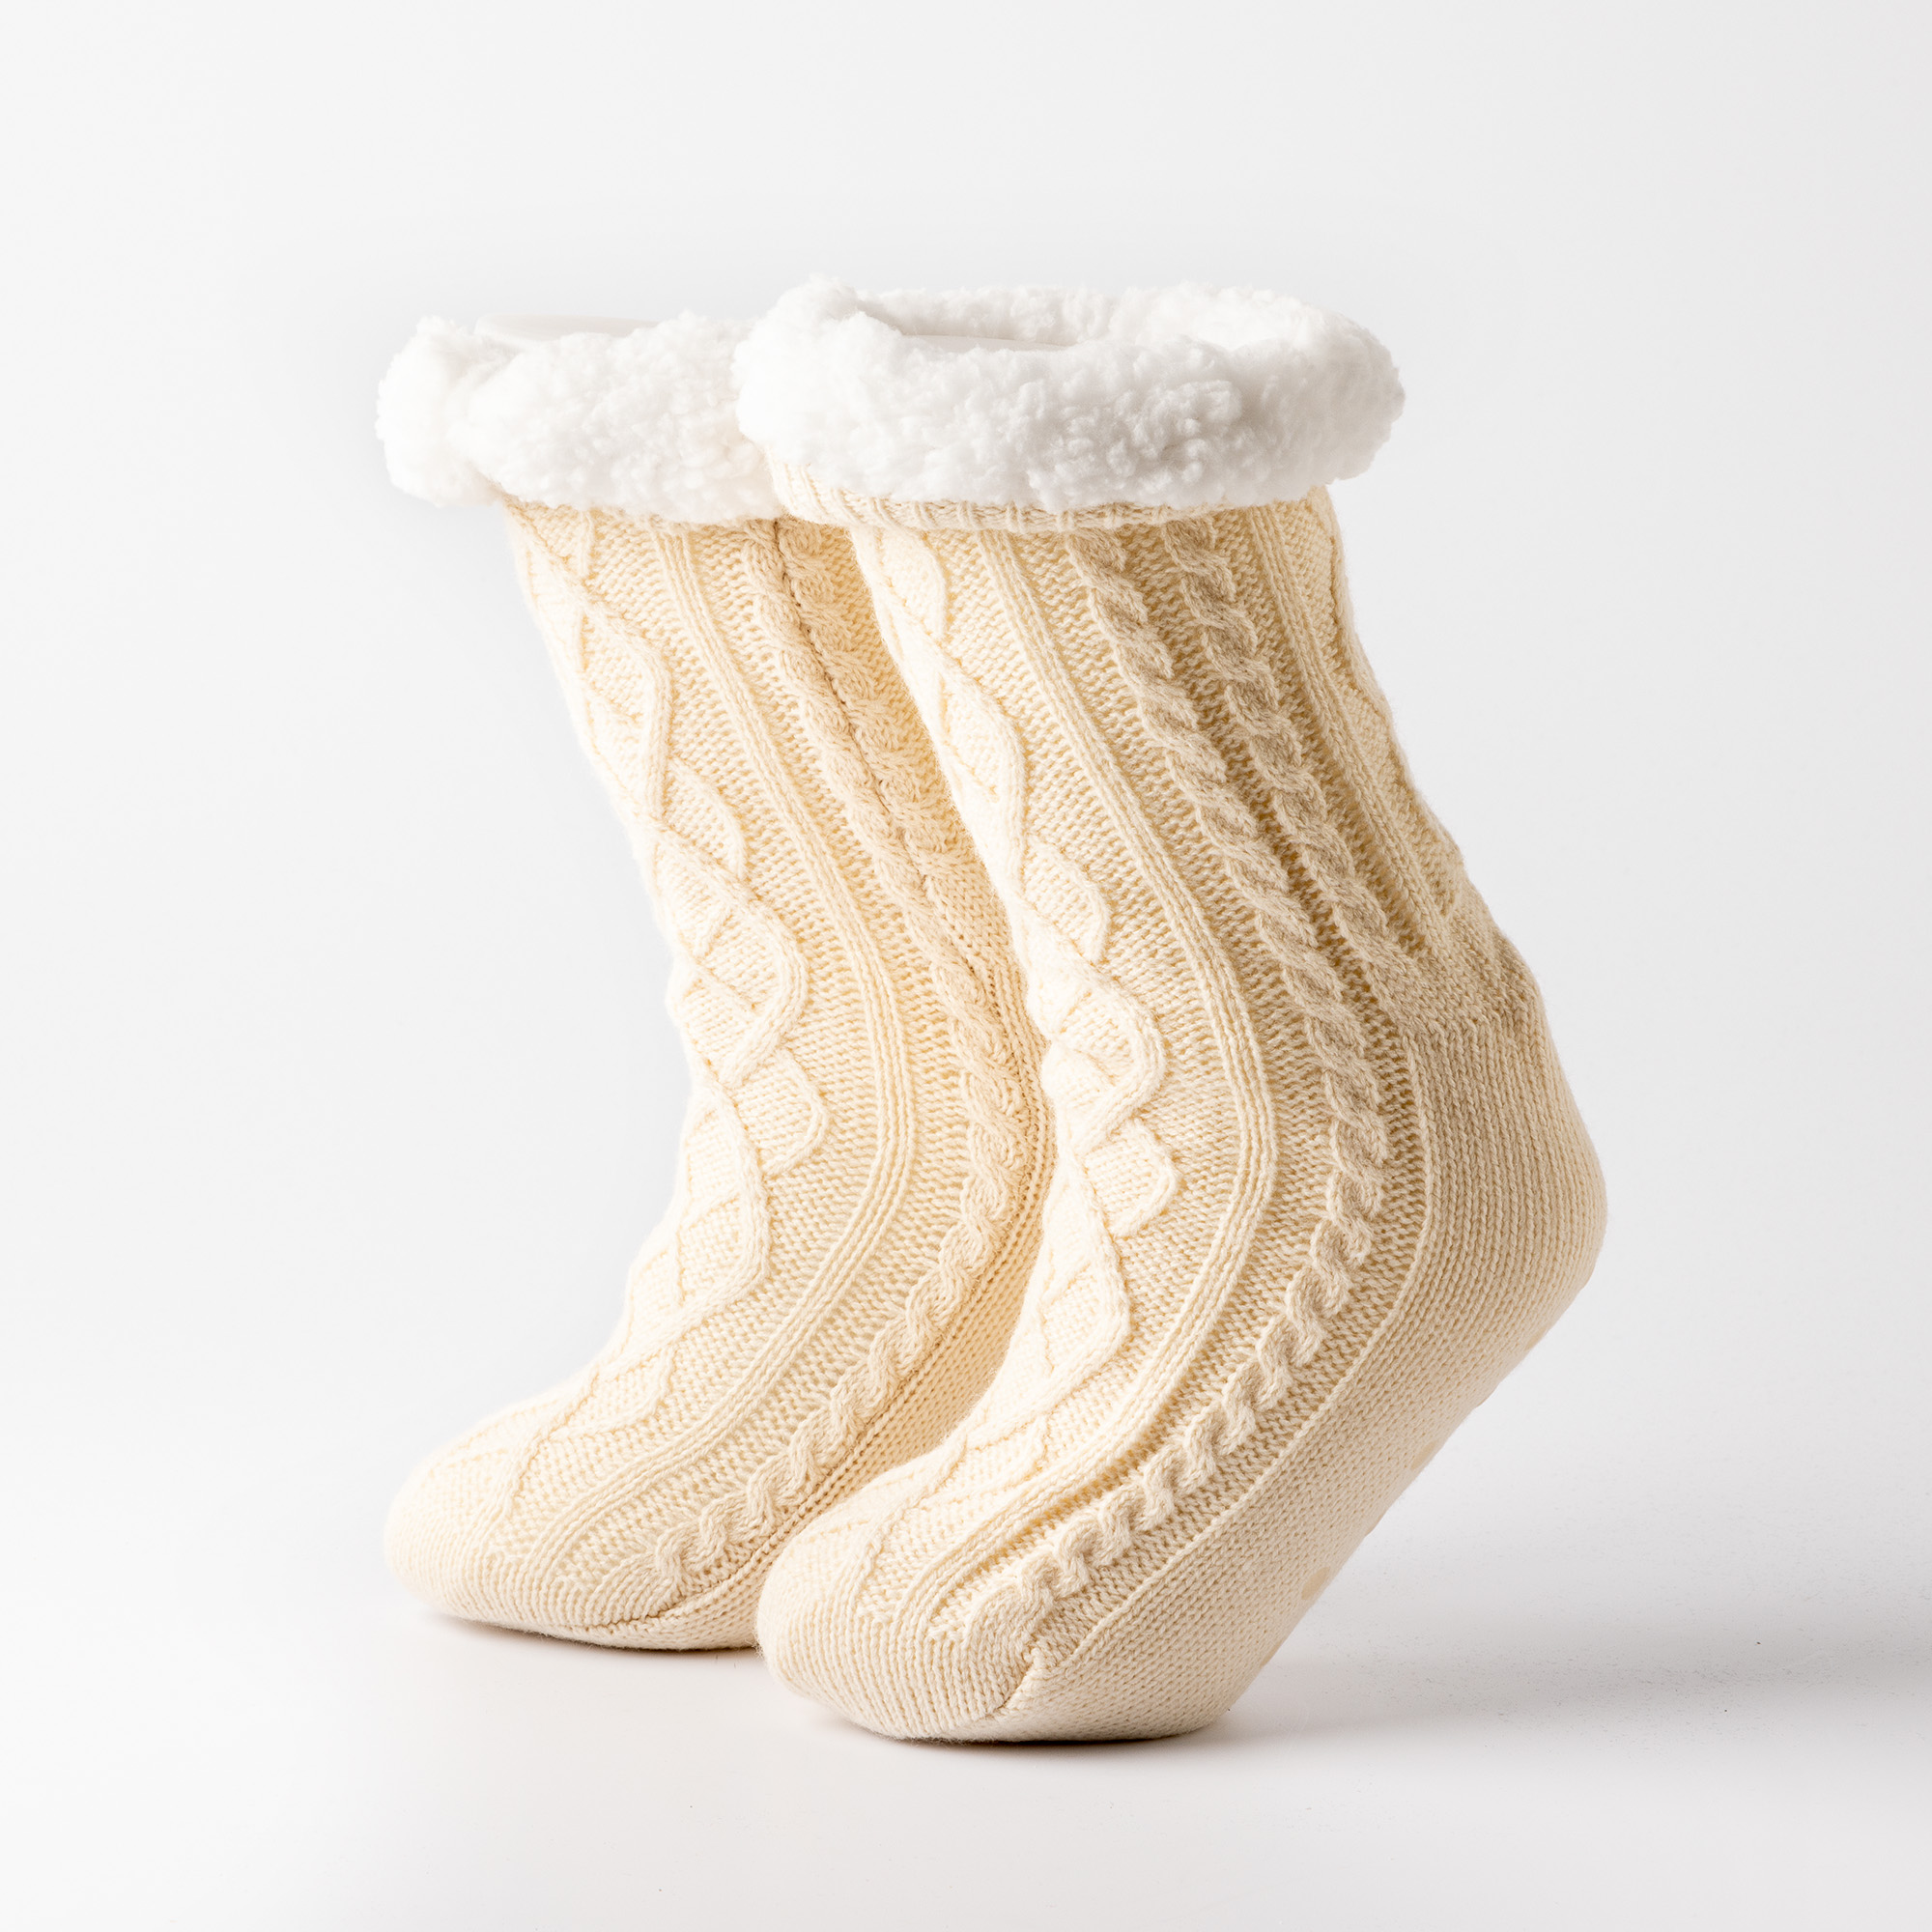 ELZA - Chaussettes torsadées - antidérapantes - avec doublure sherpa - taille unique  - Bone White - blanc